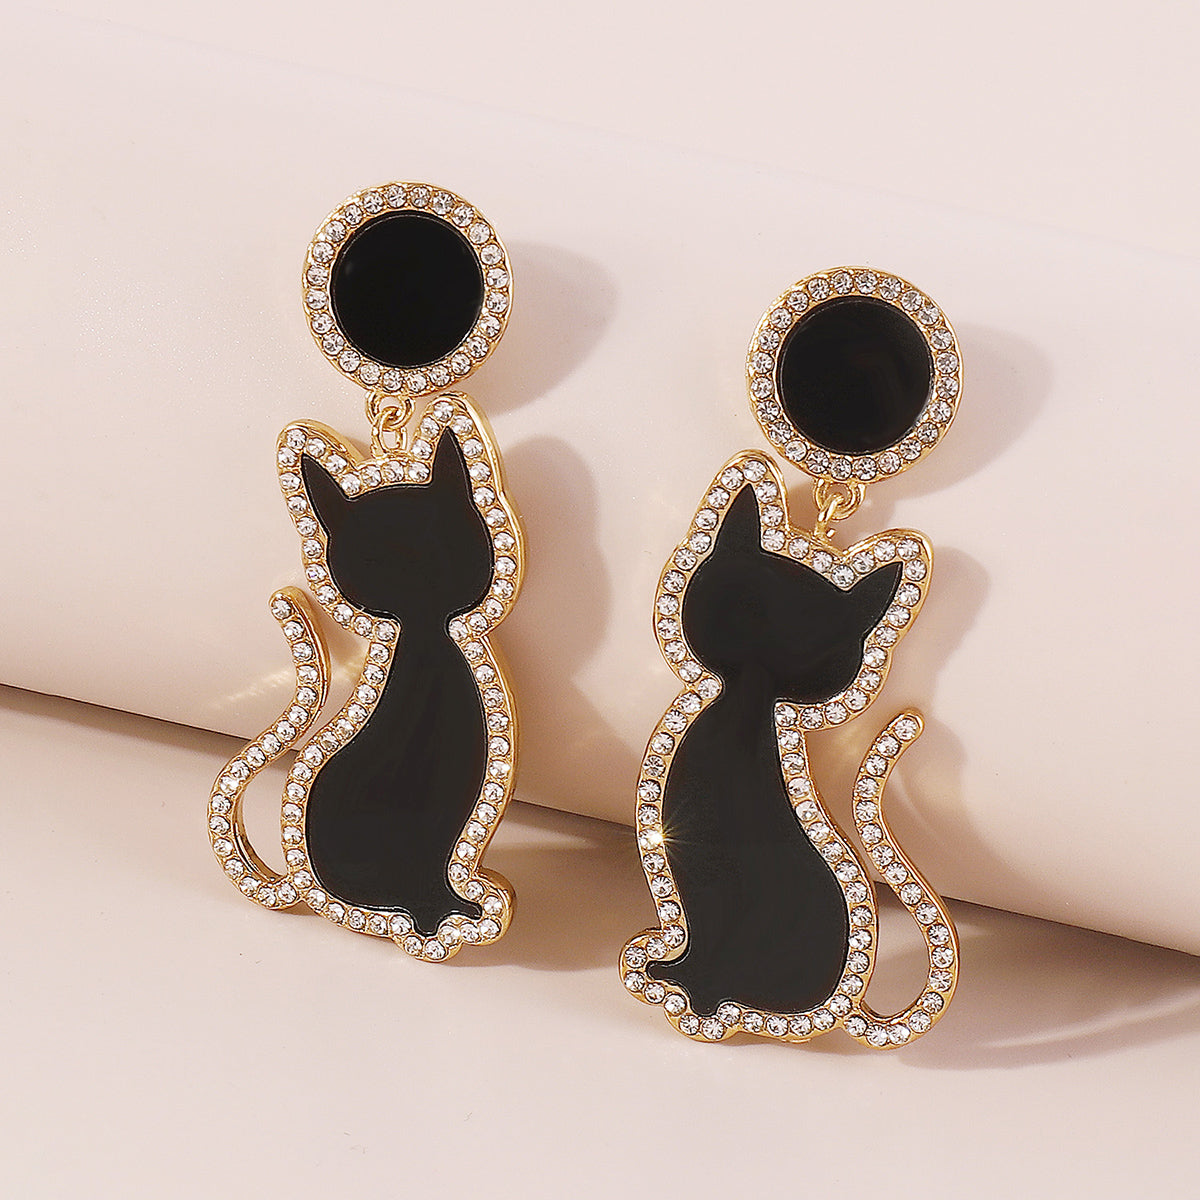 E11384 Cute Black & White Enamel Cat Dangle Earrings